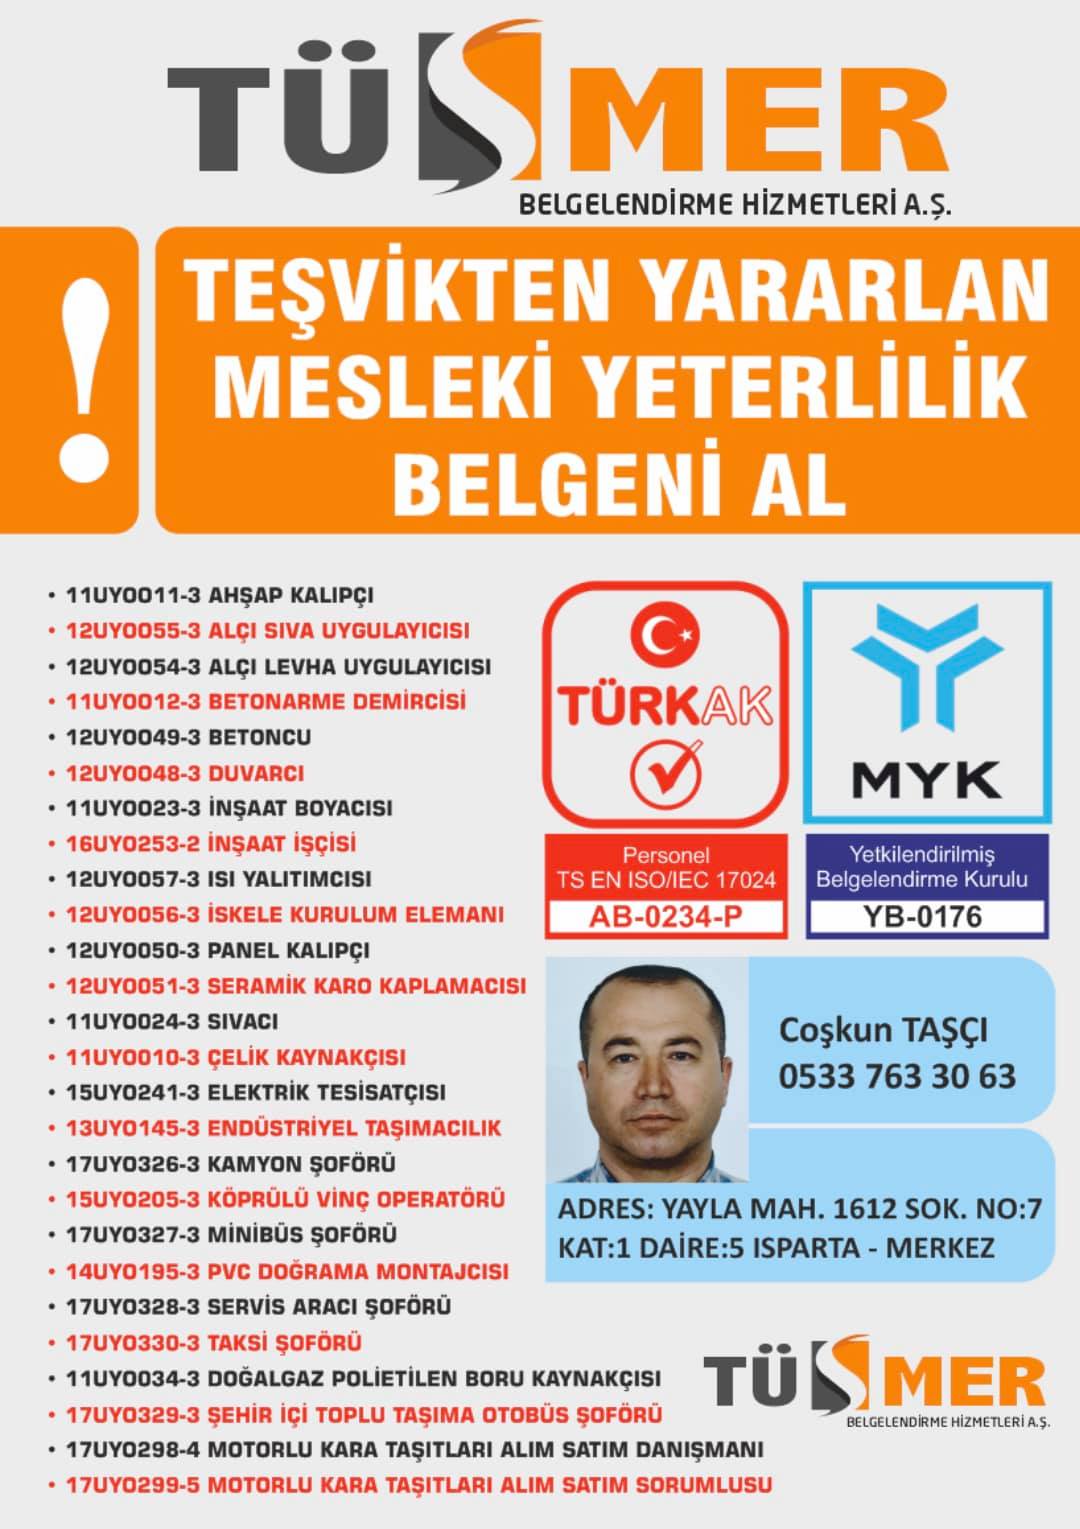 MYK MESLEKİ YETERLİLİK BELGESİ Levent Beşiktaş İstanbul